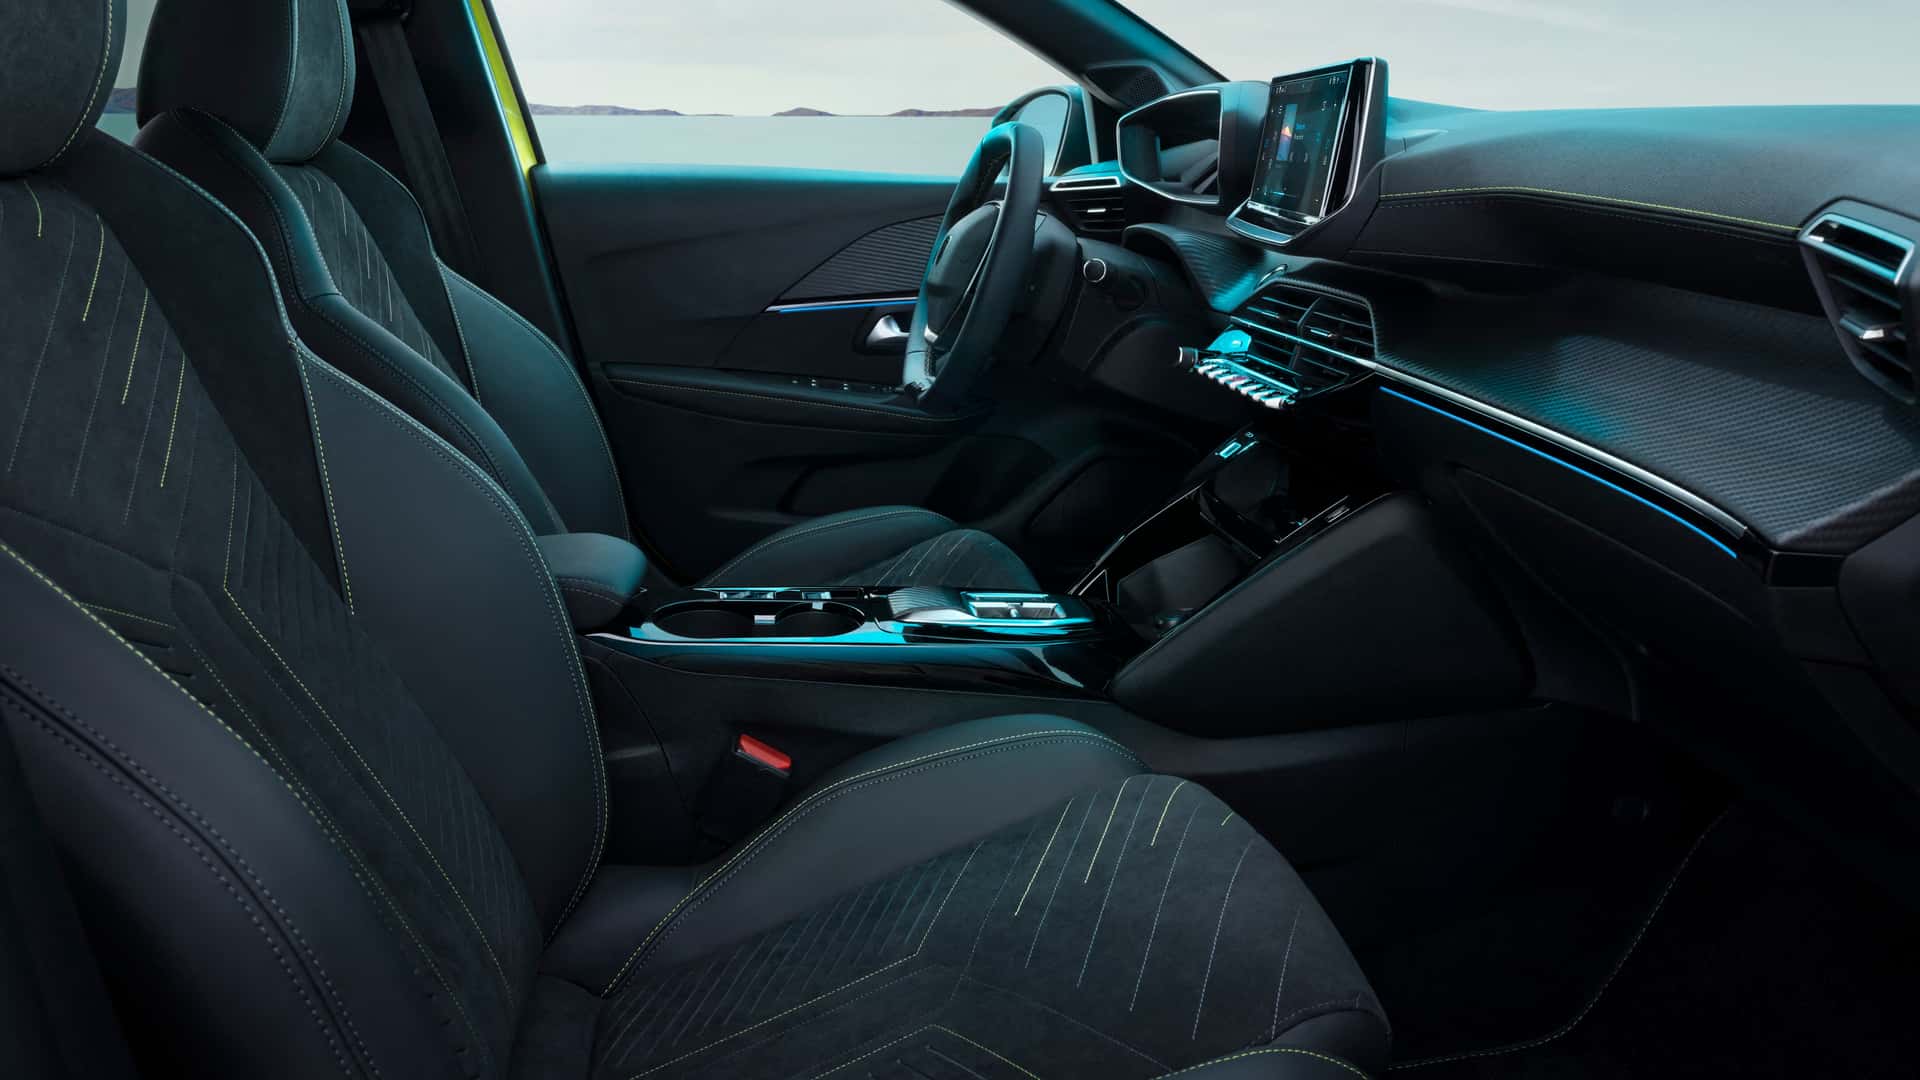 Makyajlı Peugeot 208 tanıtıldı: Yenilenen tasarım, yeni hibrit motorlar